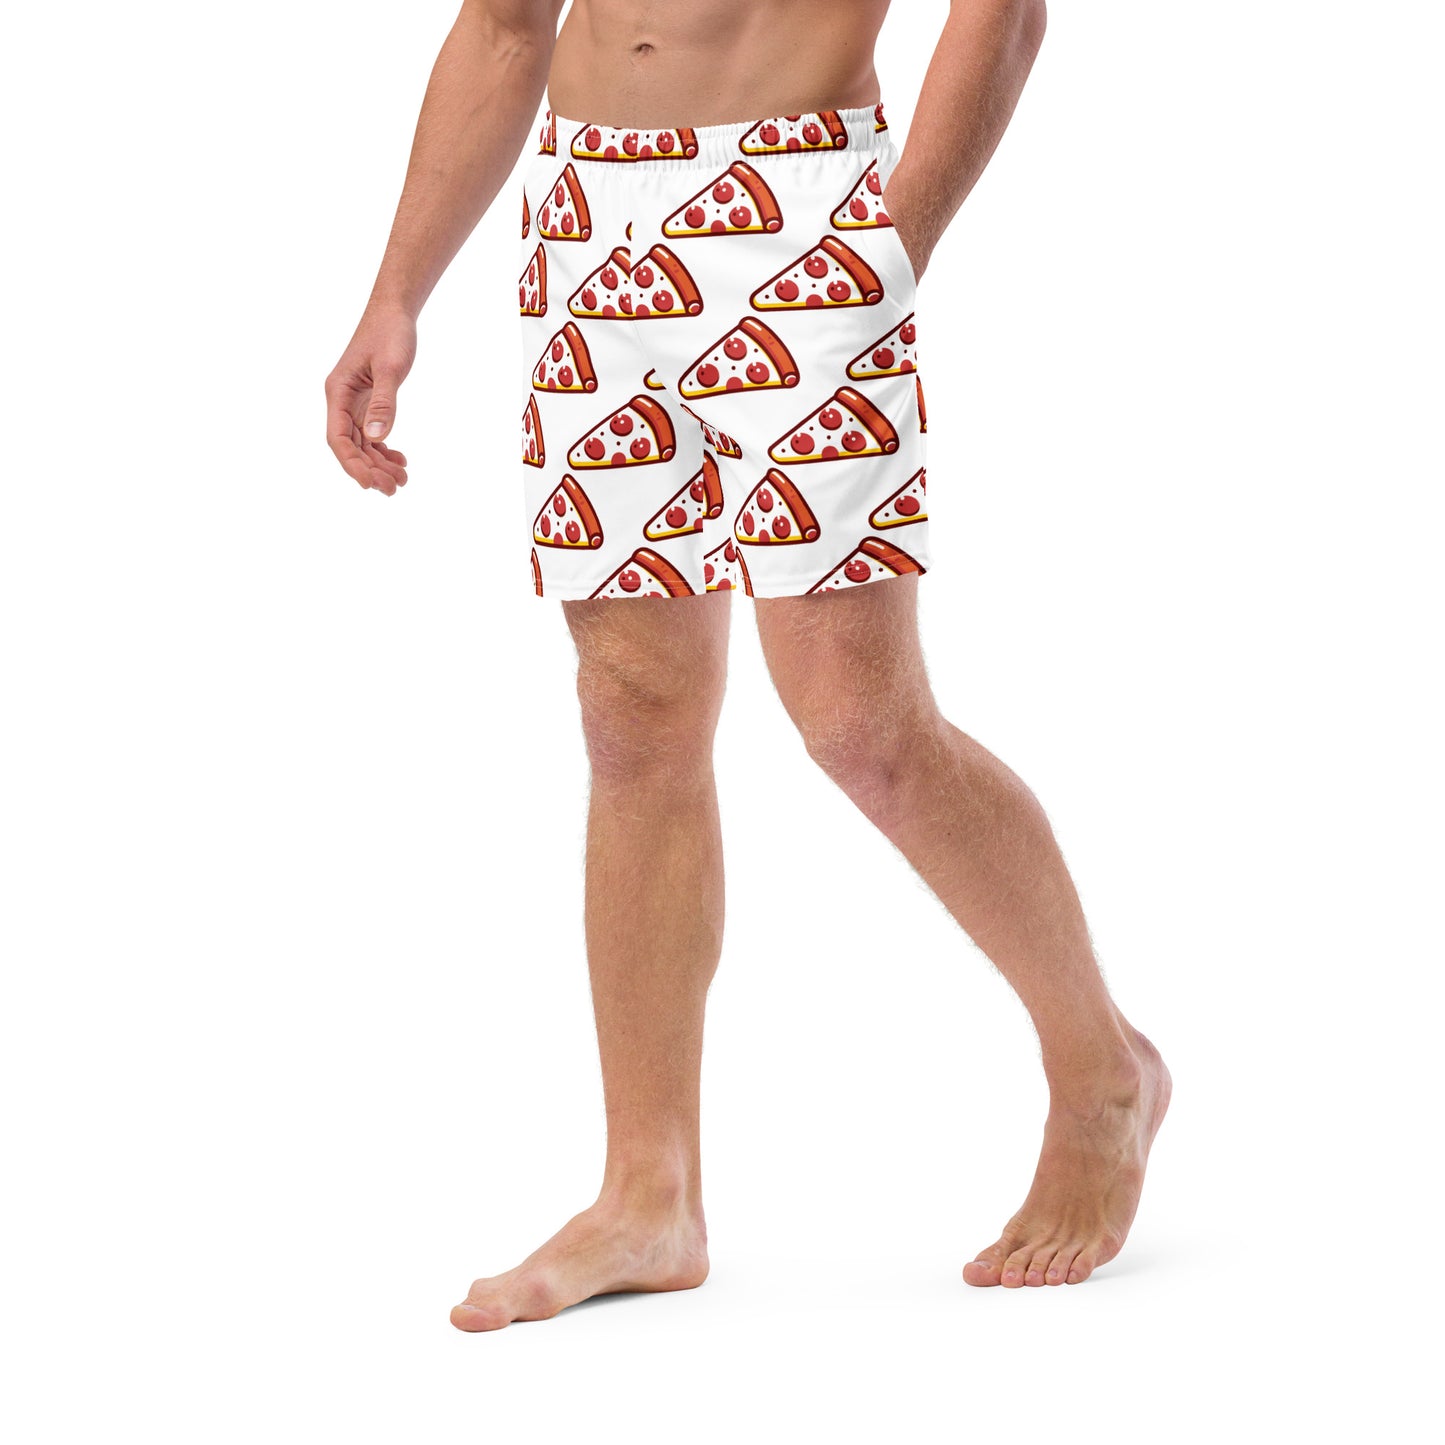 Slice of Pizza Men's swim trunks - Tower Pizza Gift Shop